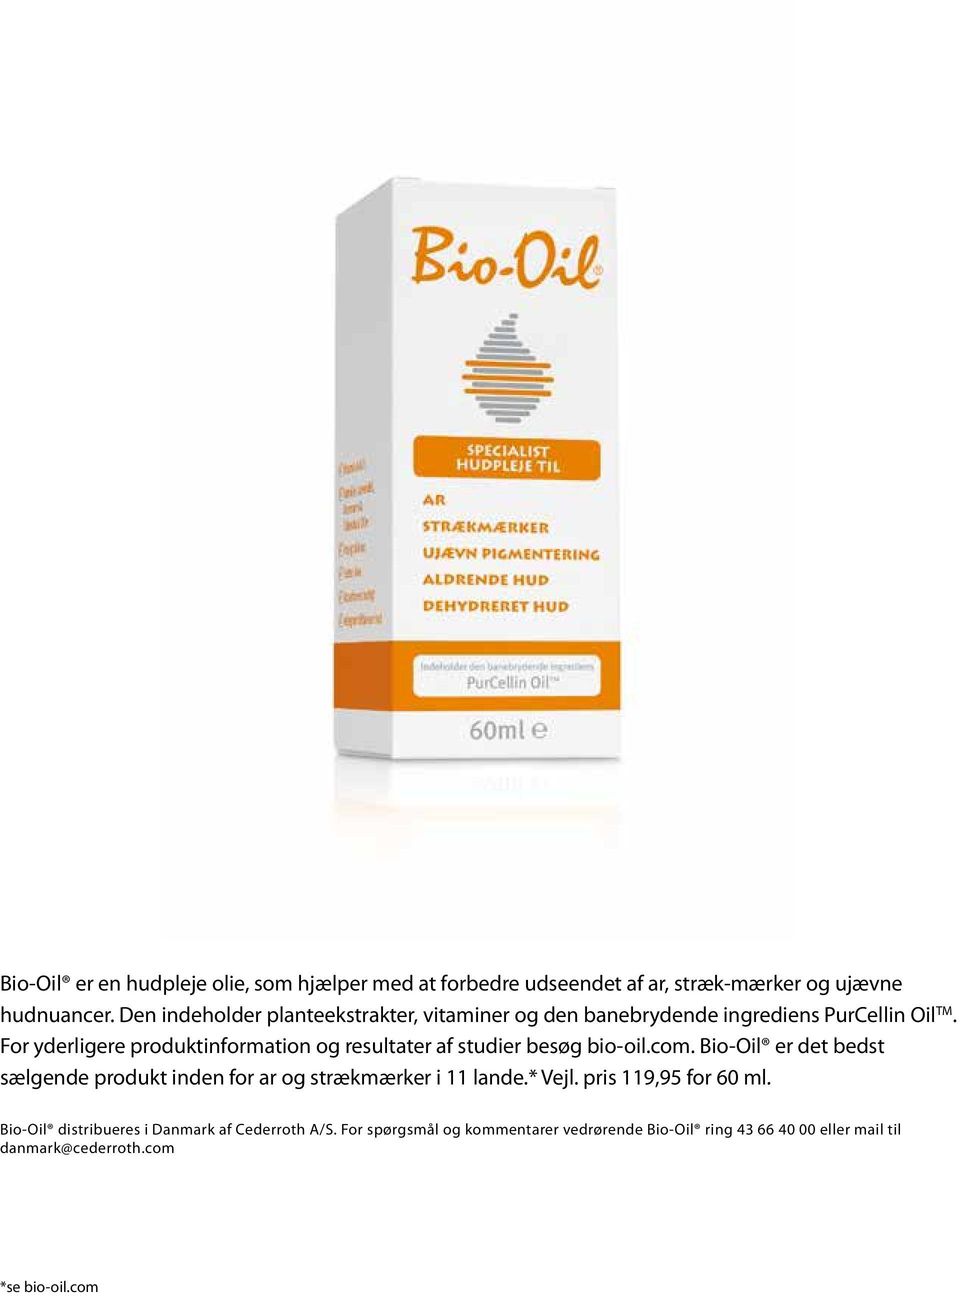 For yderligere produktinformation og resultater af studier besøg bio-oil.com.